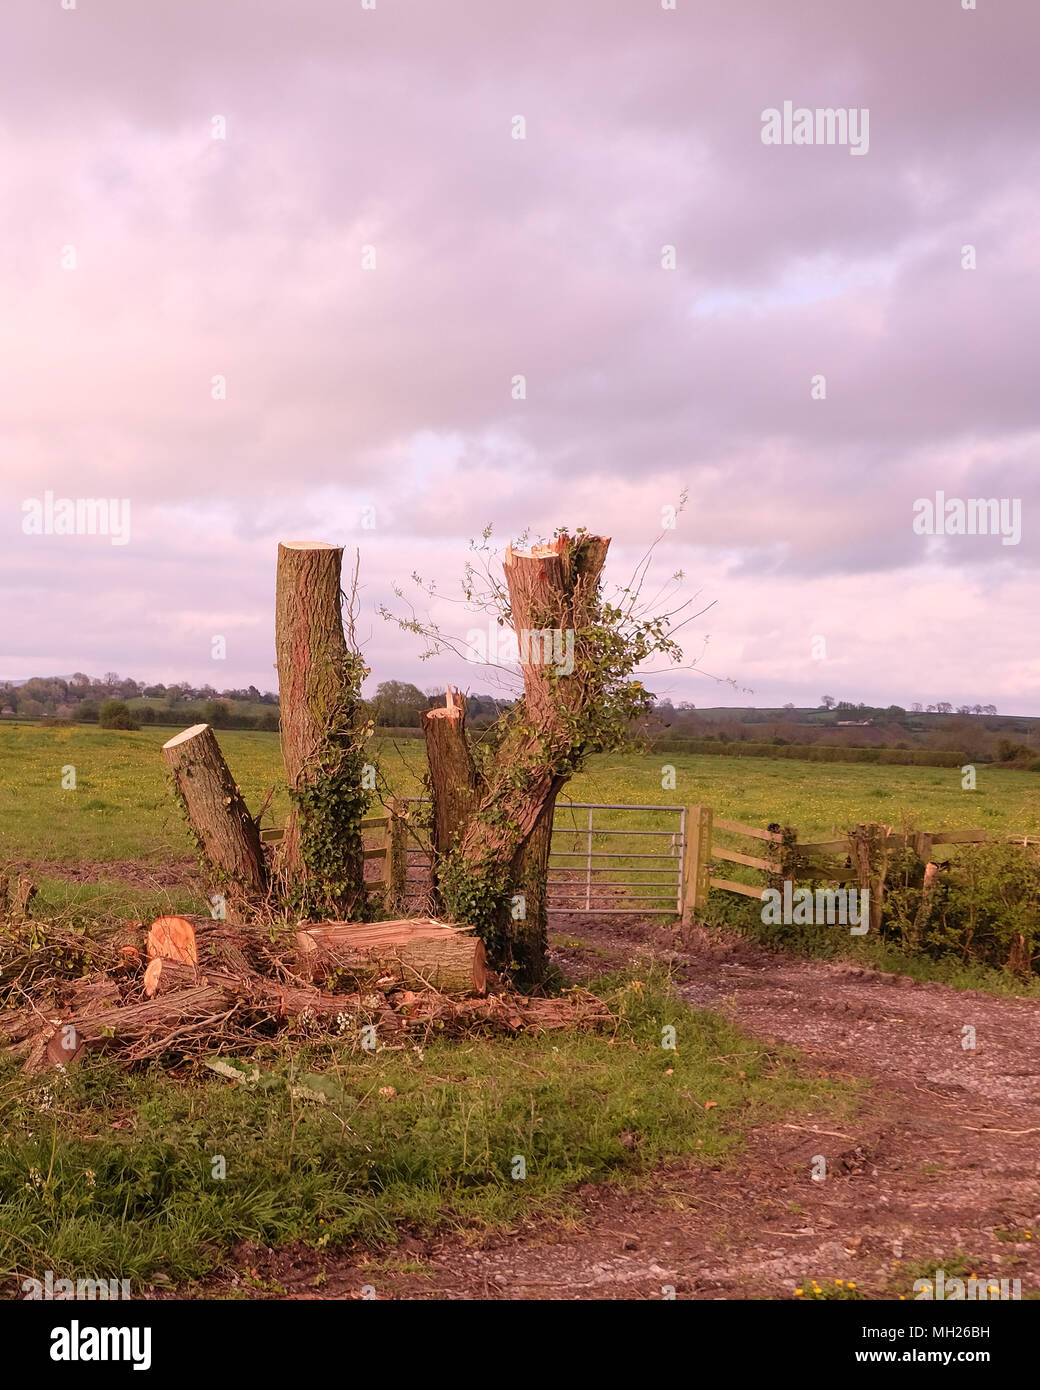 Aprile 2018 - spot di bellezza distrutta? Ceduo di alberi tagliati nelle zone rurali del Somerset vicino a Cheddar, con una perdita di habitat per la flora e la fauna. Foto Stock